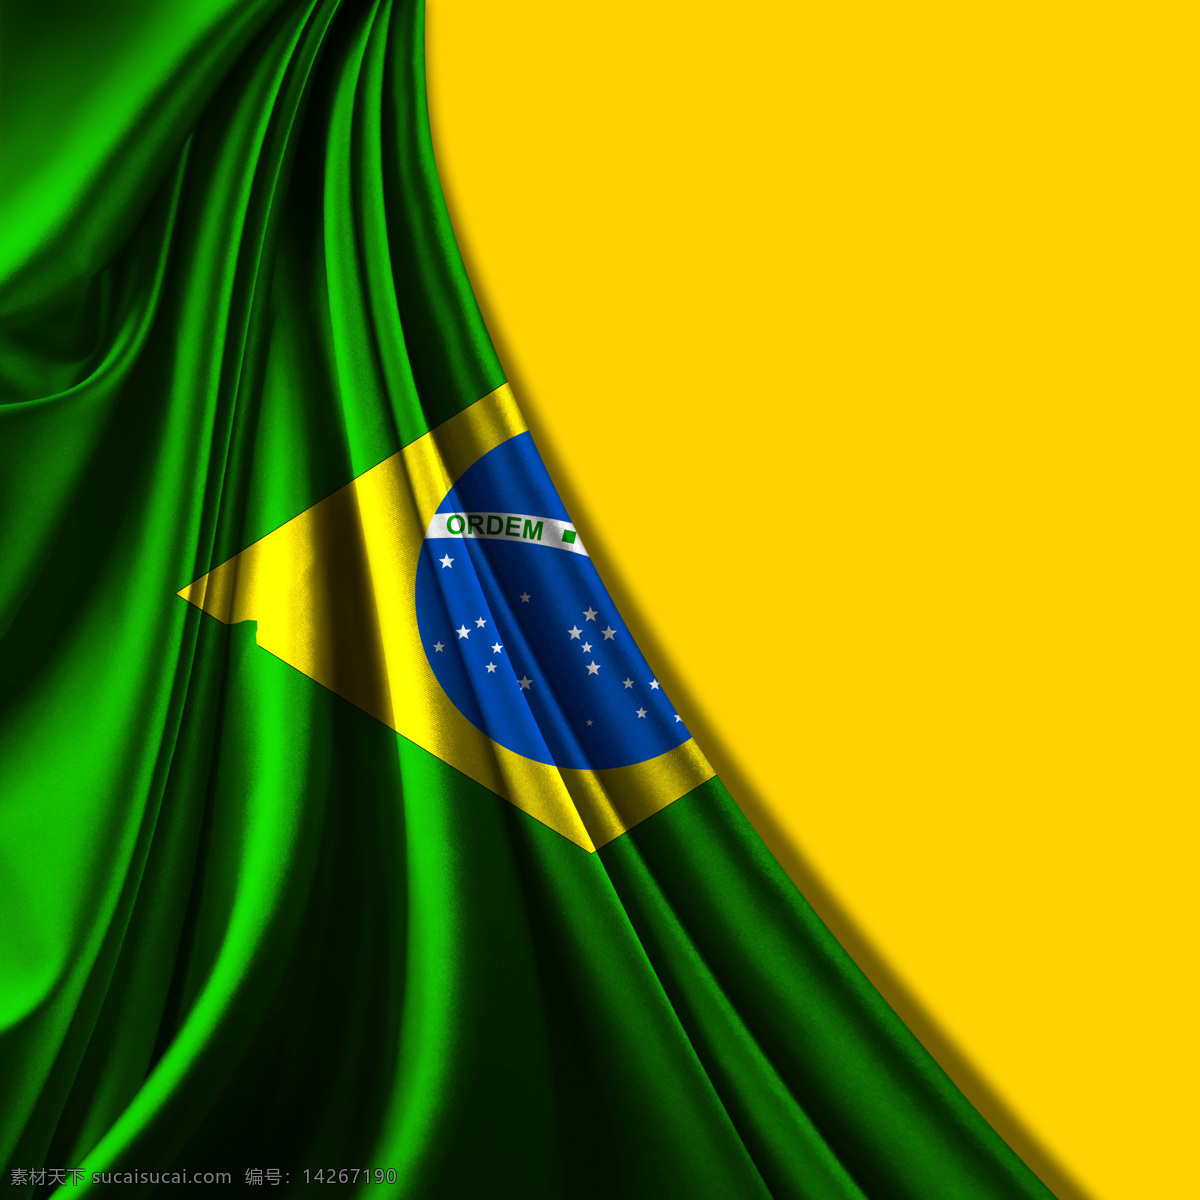 2014 巴西 世界杯 巴西国旗 巴西世界杯 足球 国旗 设计素材 模板下载 足球比赛 巴西队 足球队 矢量图 日常生活